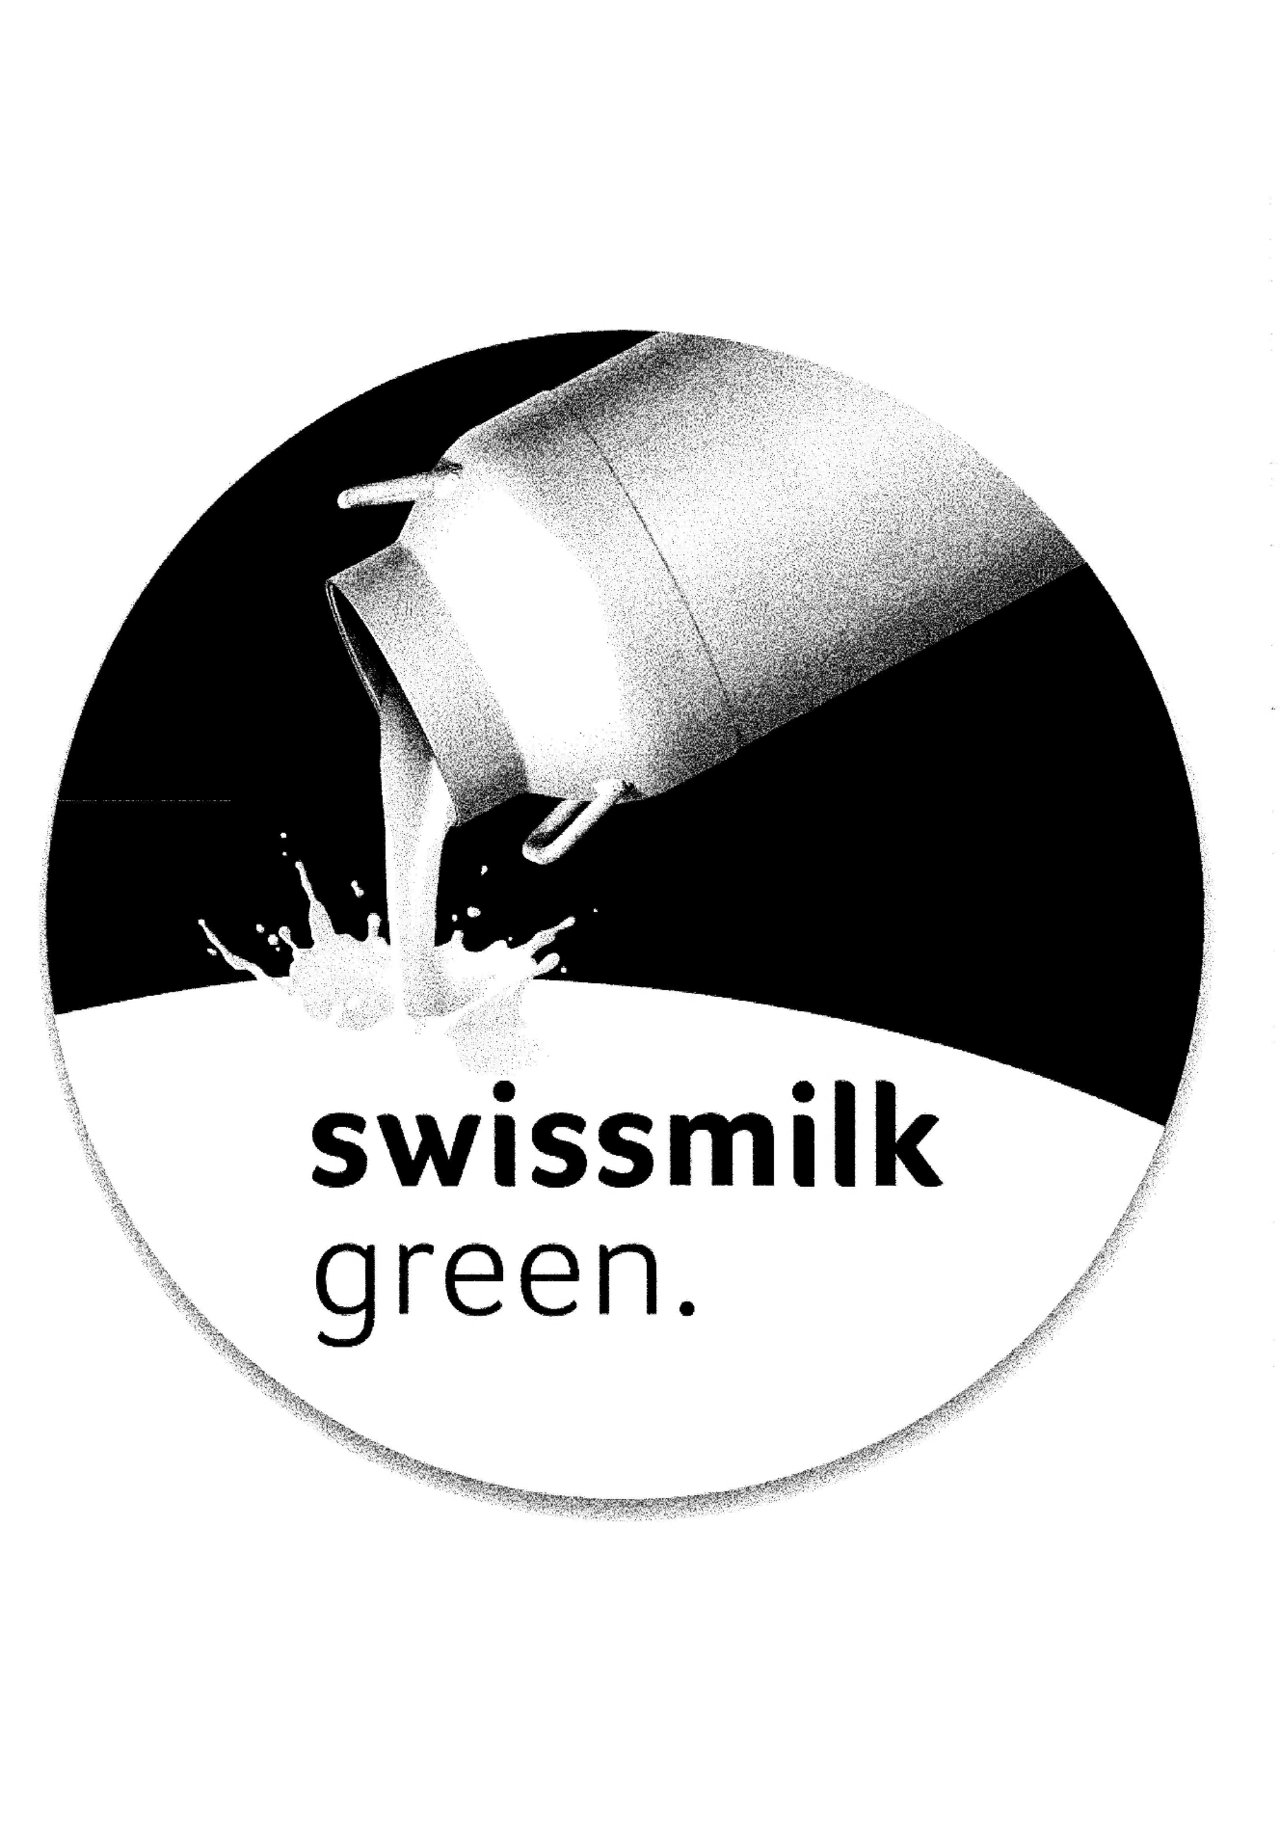 Das erste der vier registrierten Labels lehnt sich sehr stark an der Gestaltung von "Swissmilk Inside" an.